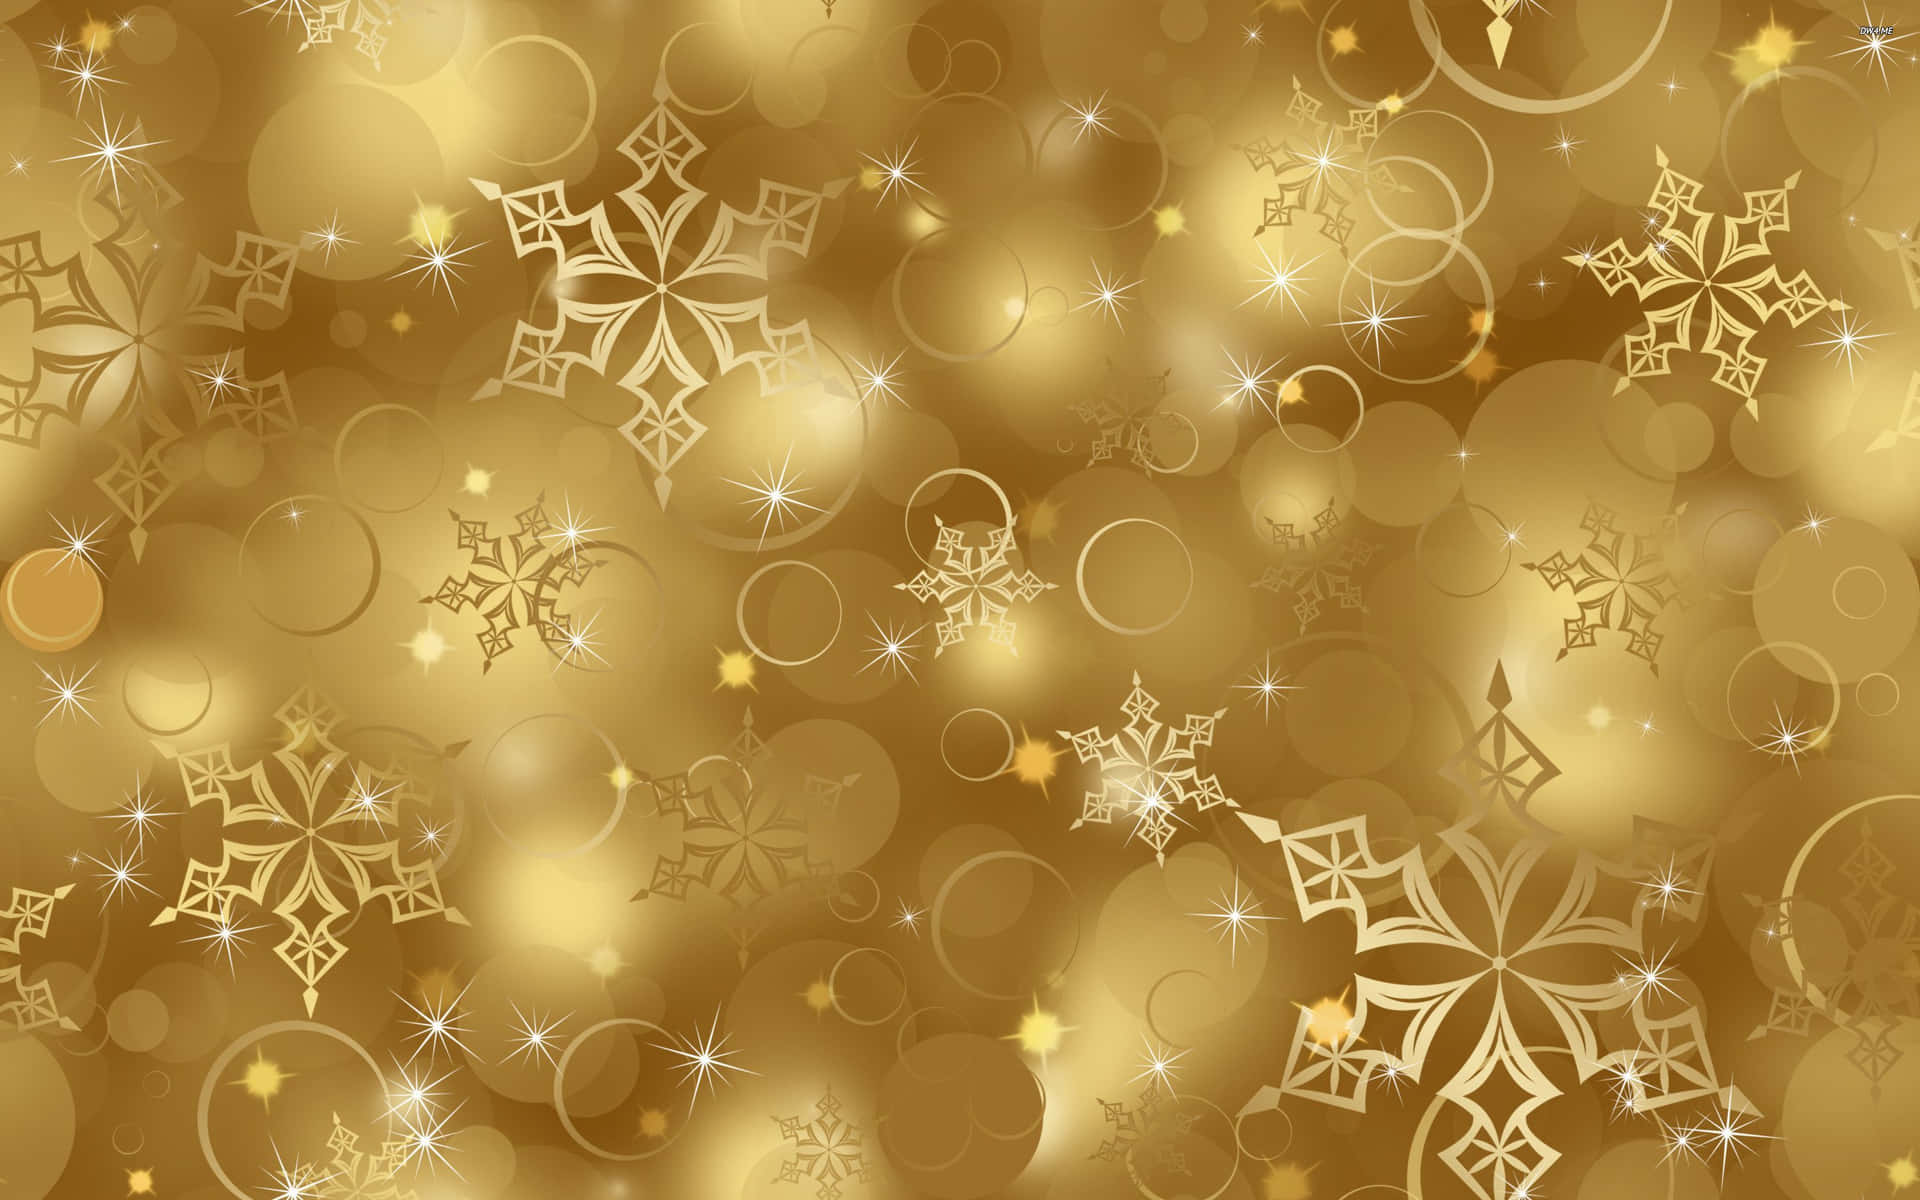 Celebrala Navidad Con Alegría Y Decoraciones Temáticas En Dorado Fondo de pantalla